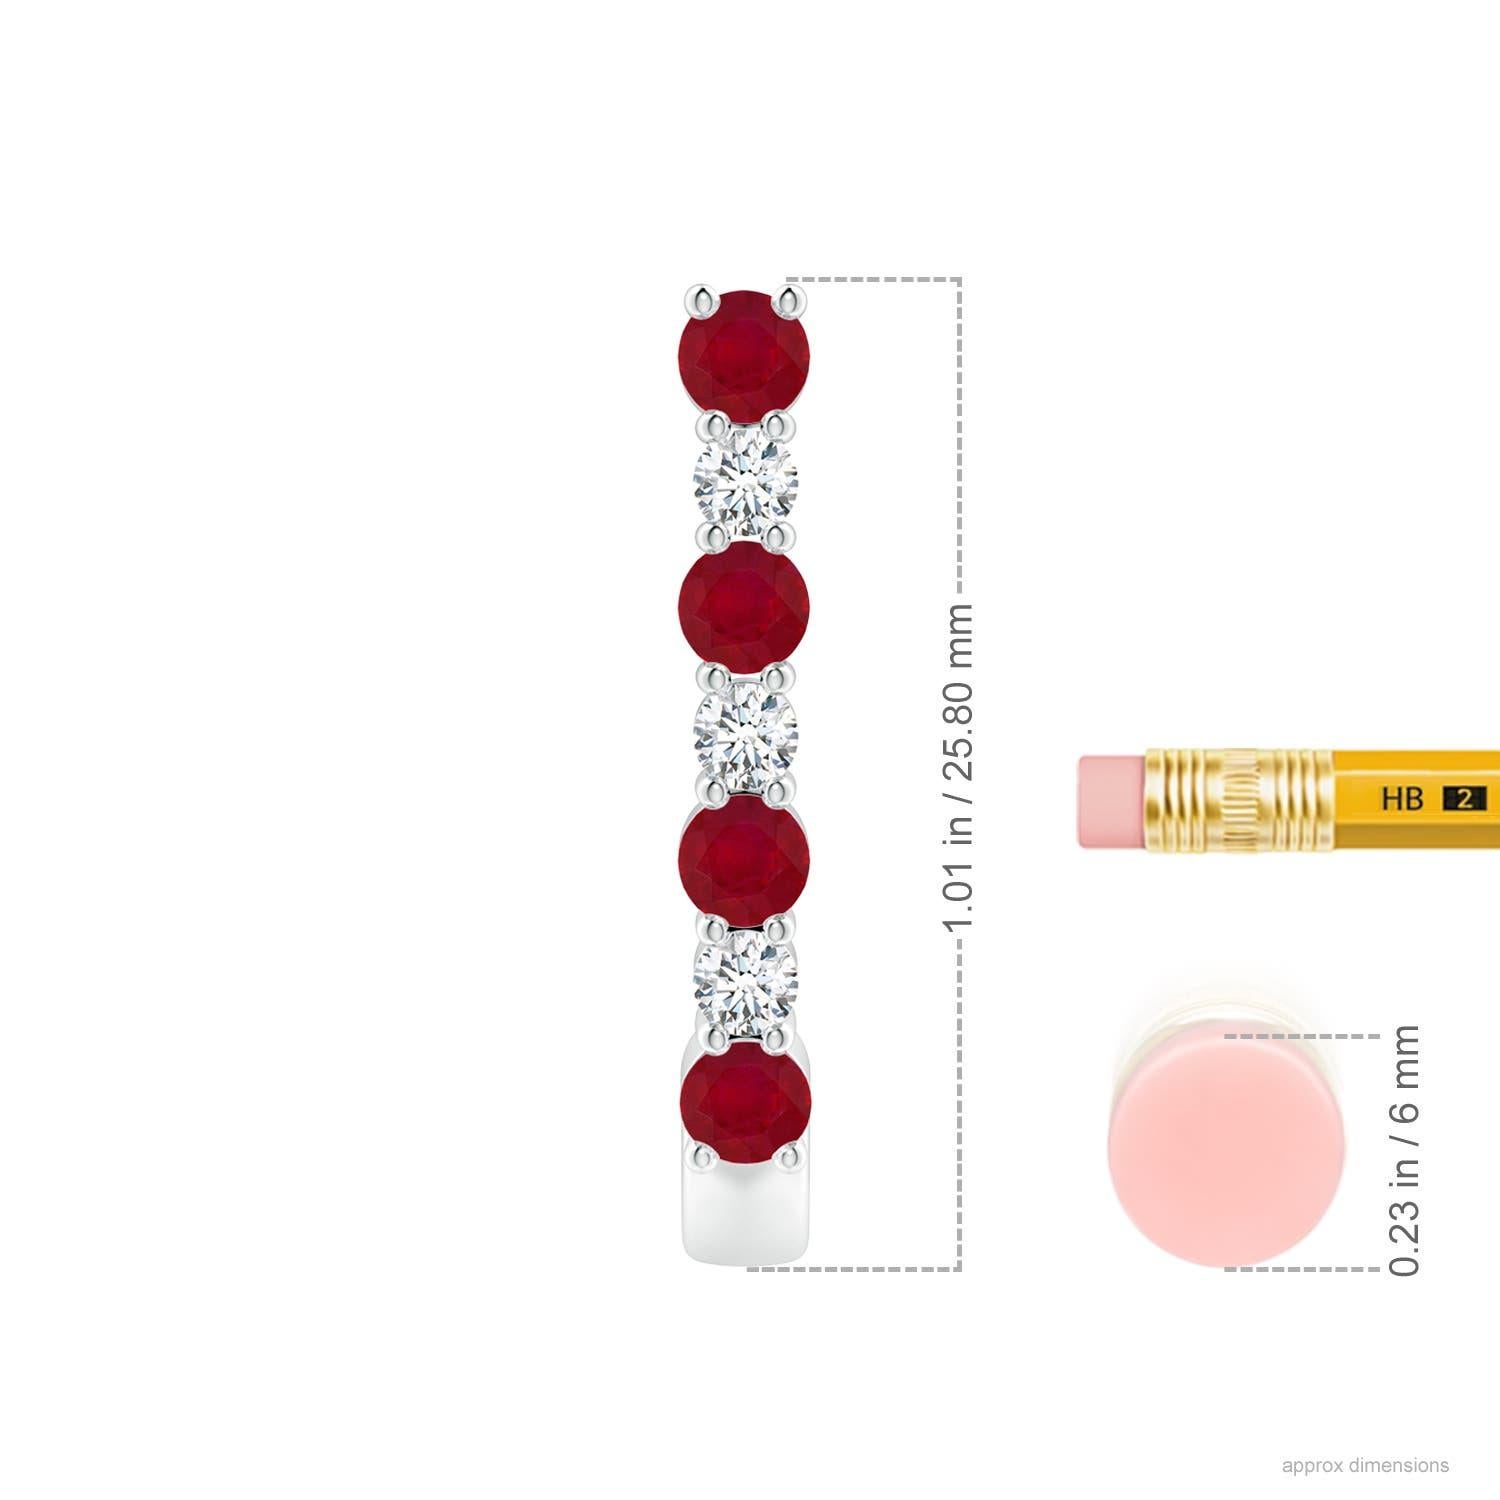 Diese atemberaubenden Rubin- und Diamantohrringe sind aus 14-karätigem Weißgold gefertigt. Die J-Ringe sind abwechselnd mit leuchtend roten Rubinen und funkelnden Diamanten besetzt, was einen fesselnden Effekt erzeugt.
Der Rubin ist der Geburtsstein